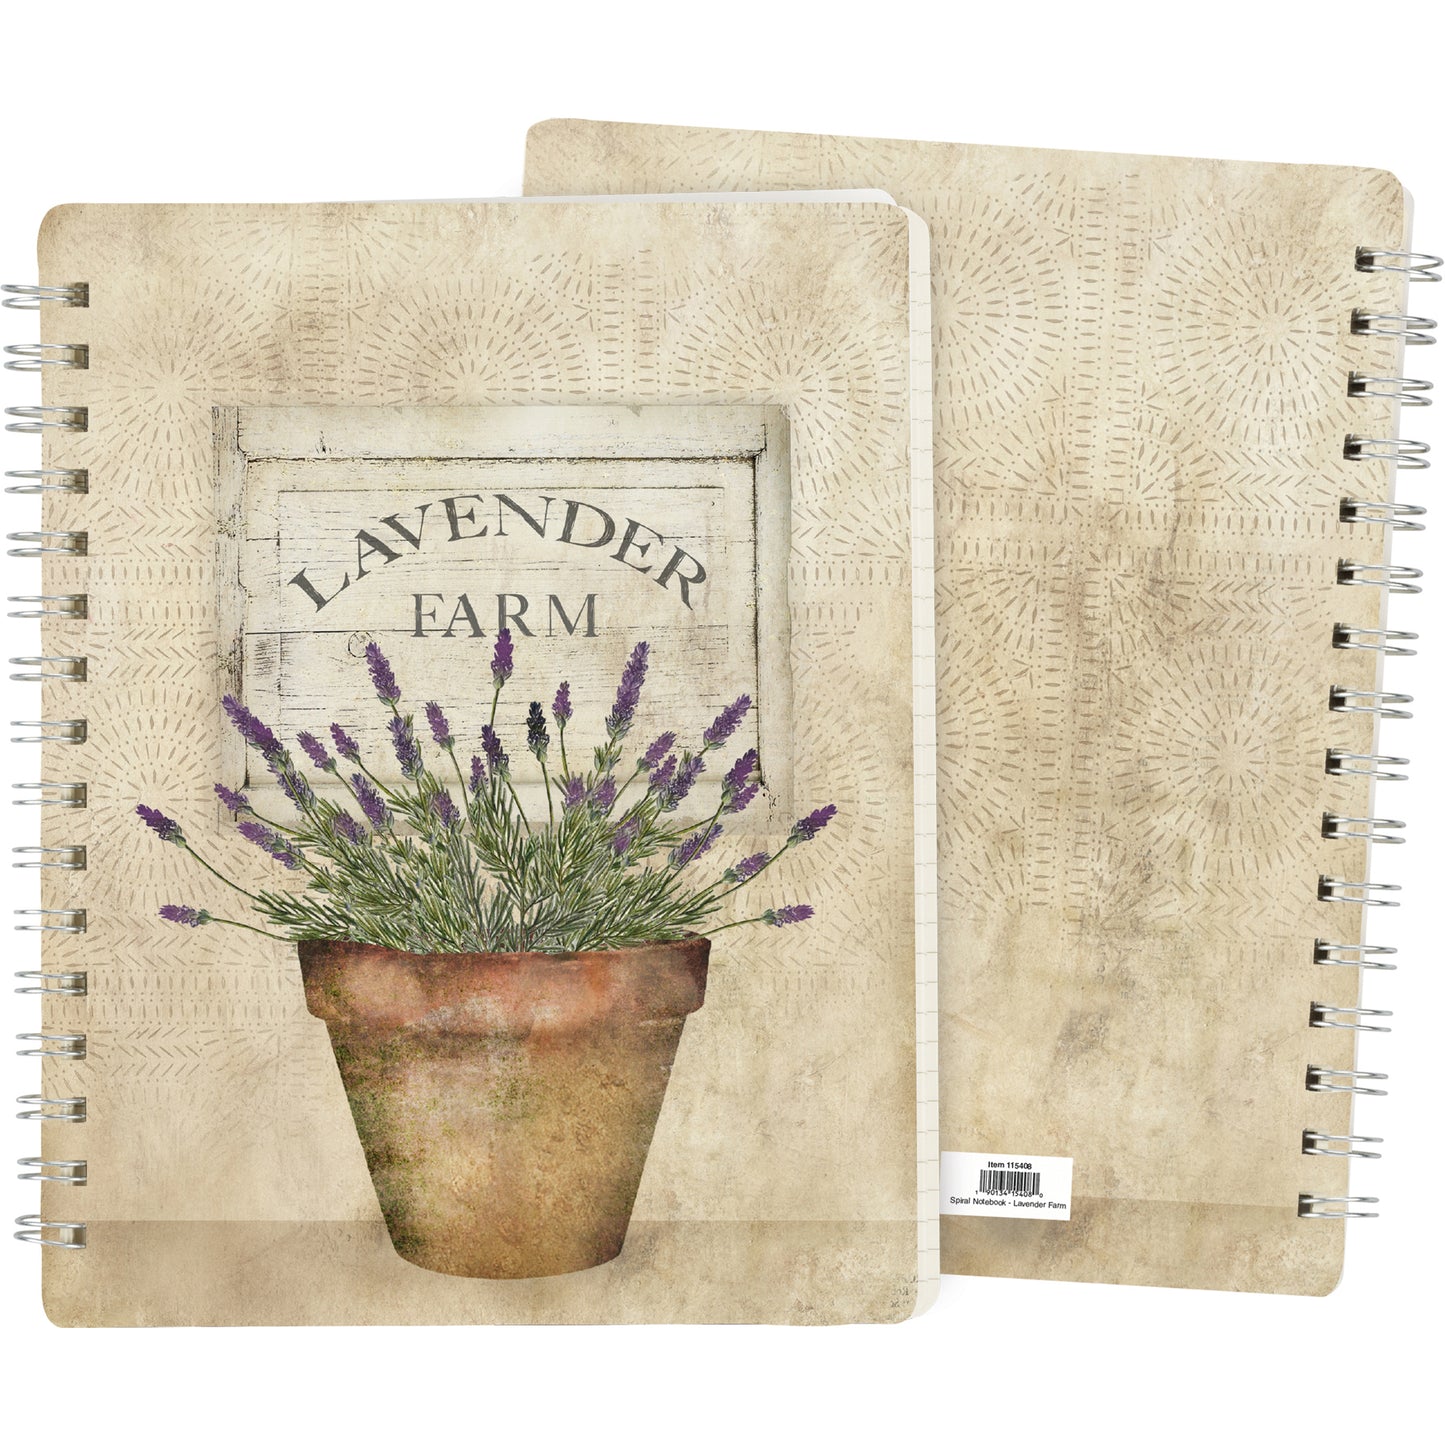 Lavender Farm Spiral Notebook